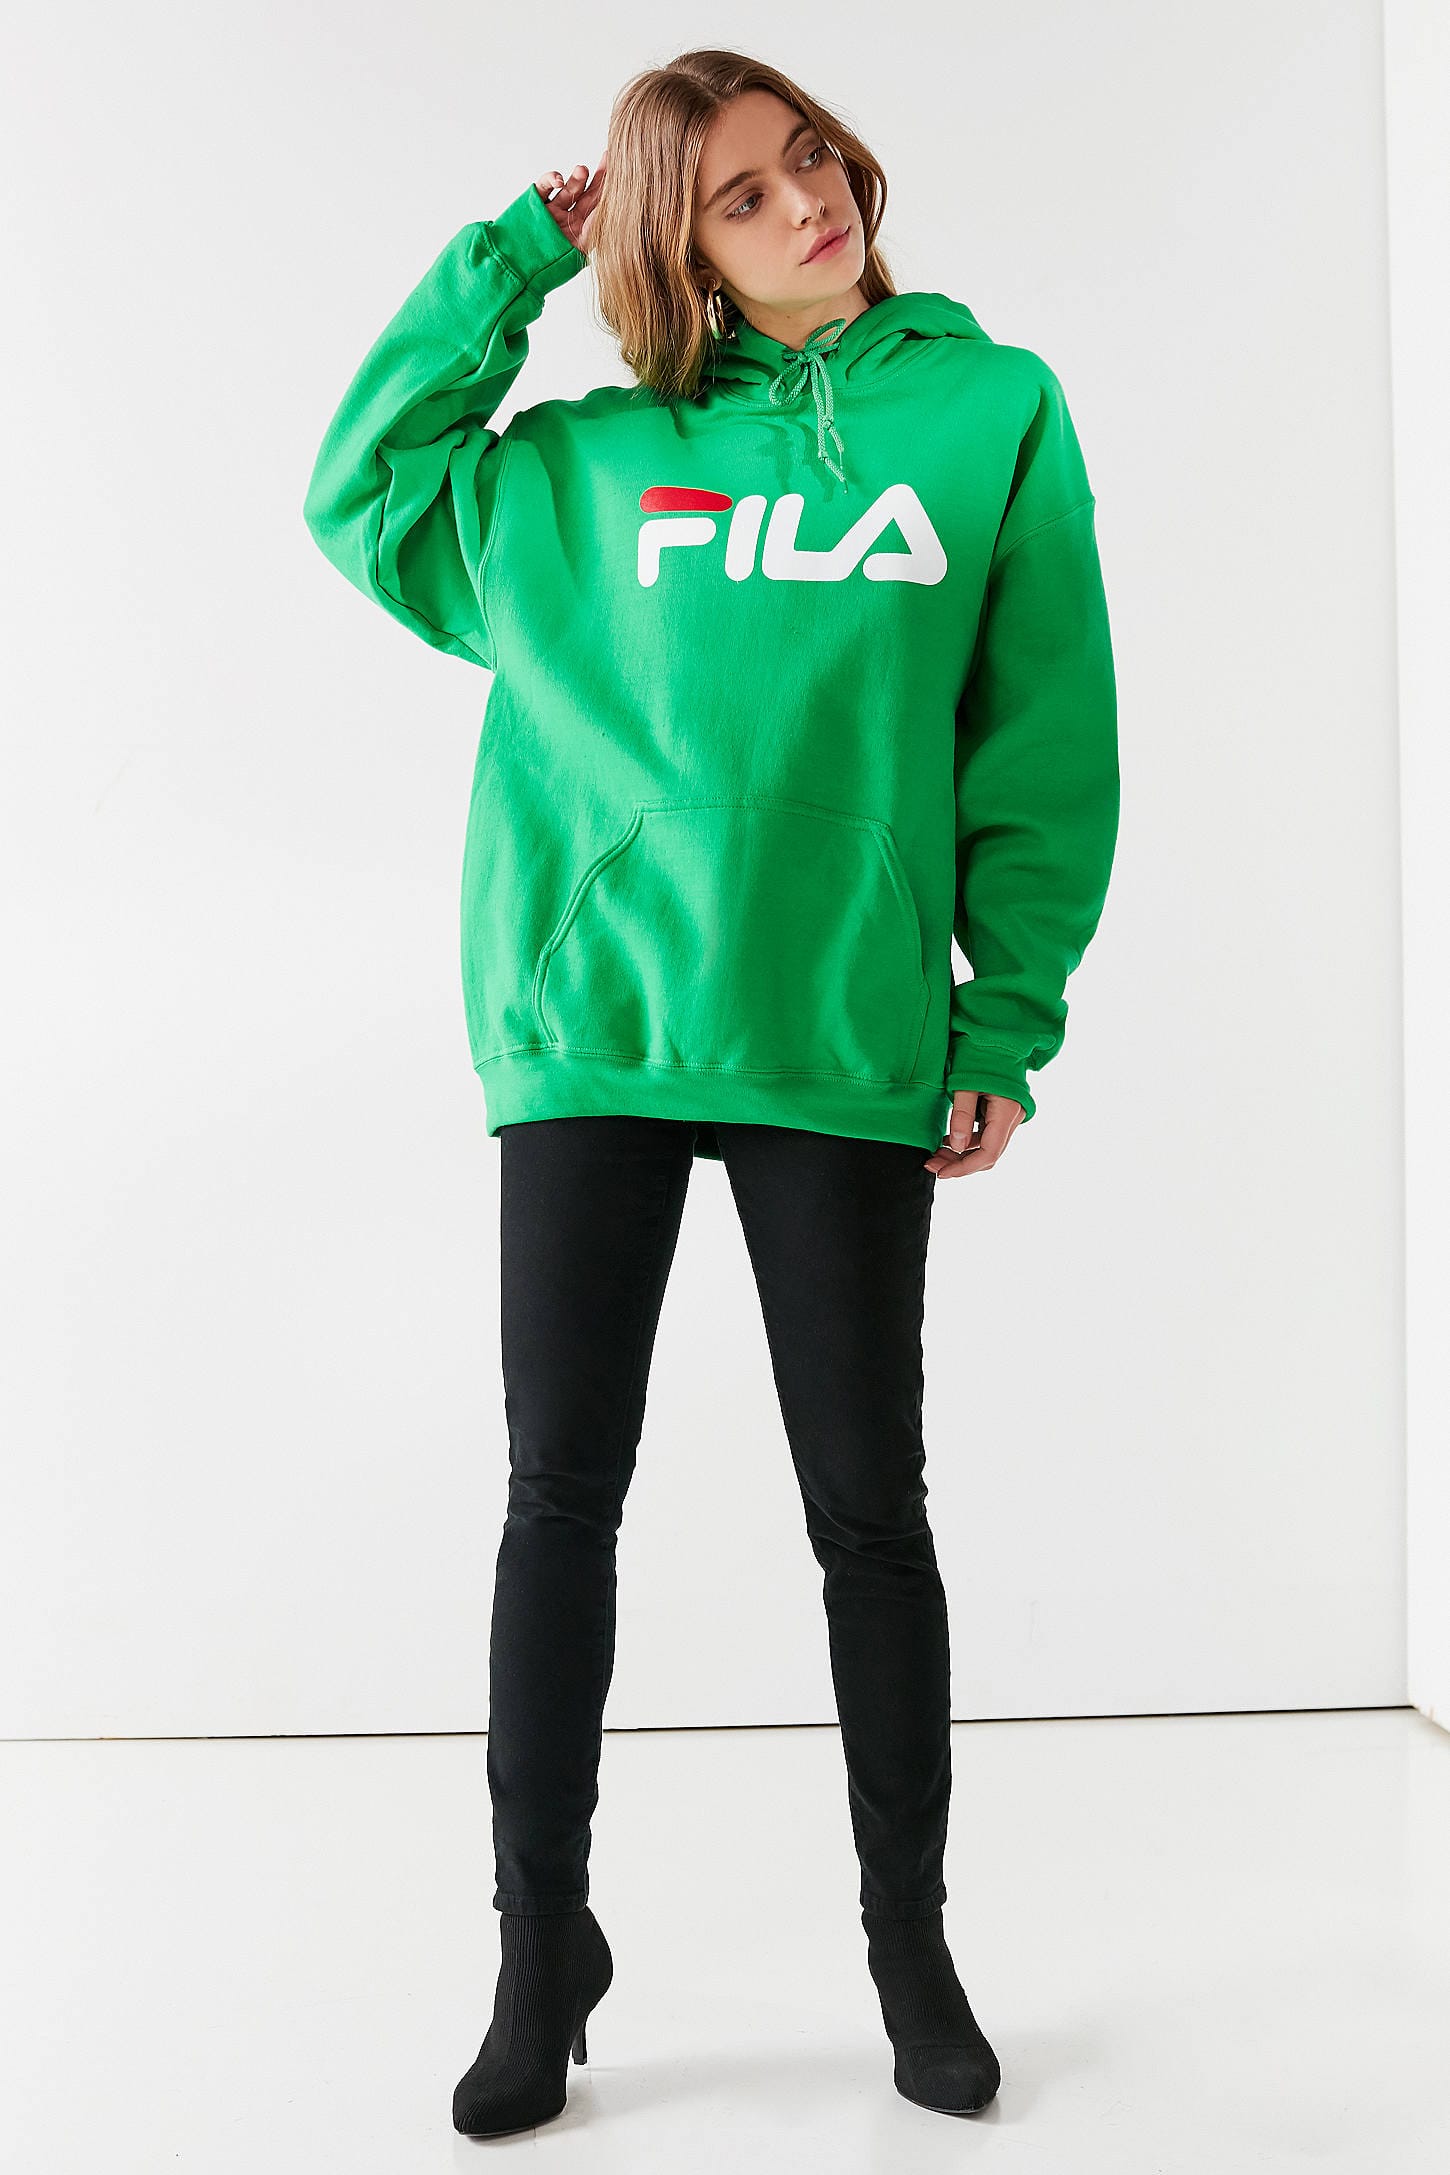 garip Uygulamalı Daha kötüye gidiyor  Fila Green Sweatshirt Online Sales, UP TO 62% OFF |  www.editorialelpirata.com